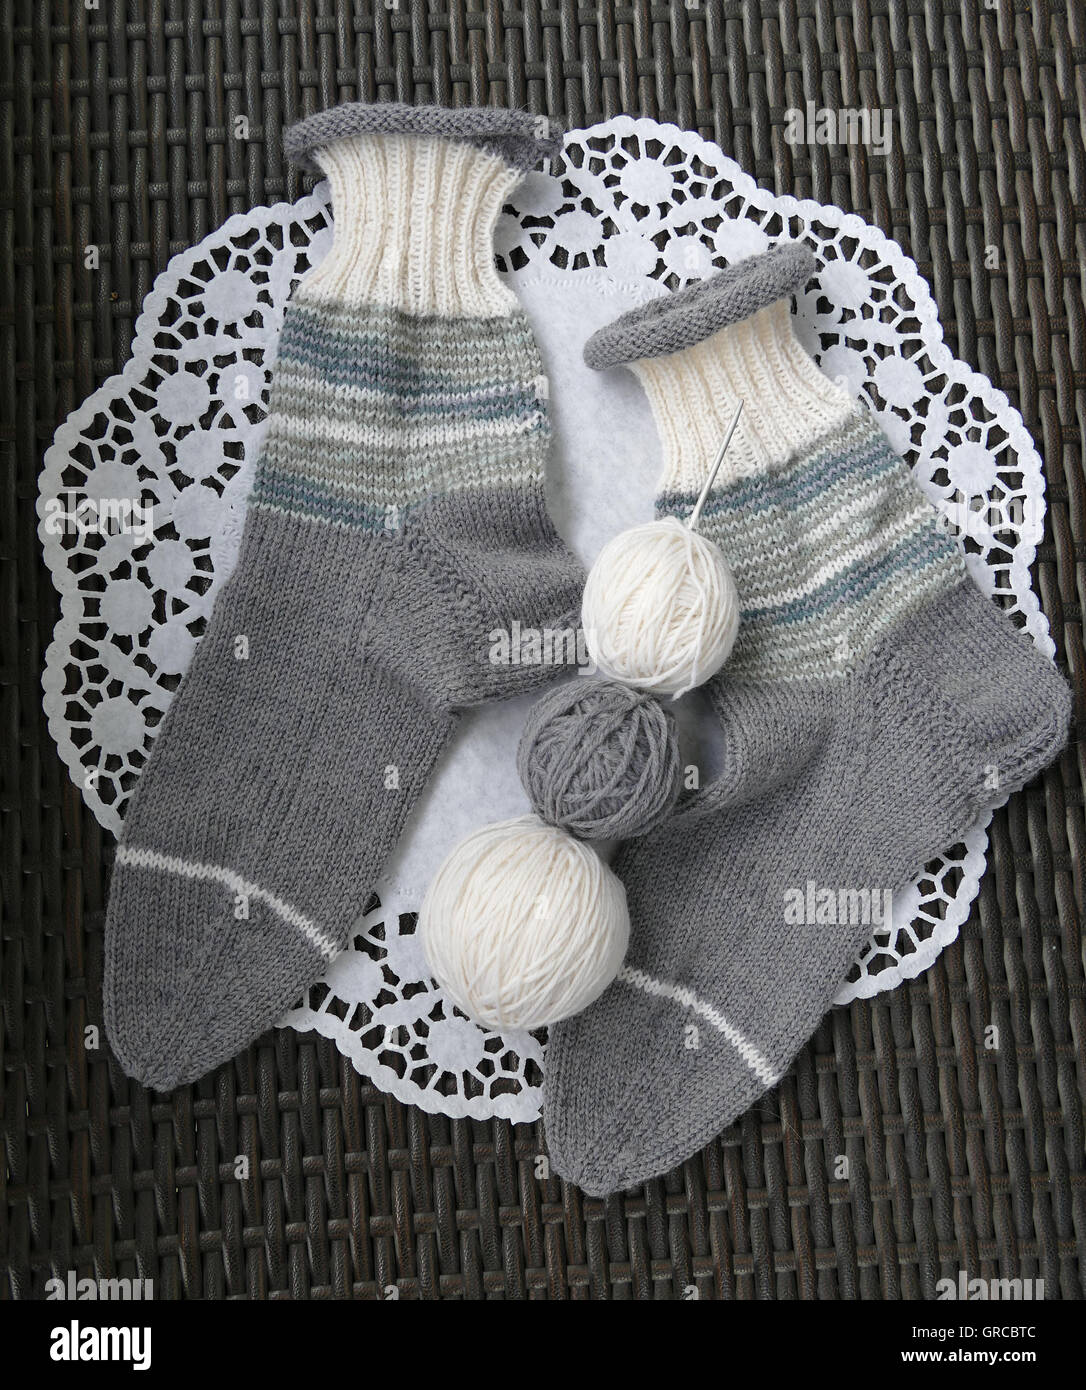 Warm Woolen Socks For Winter Stock Photo